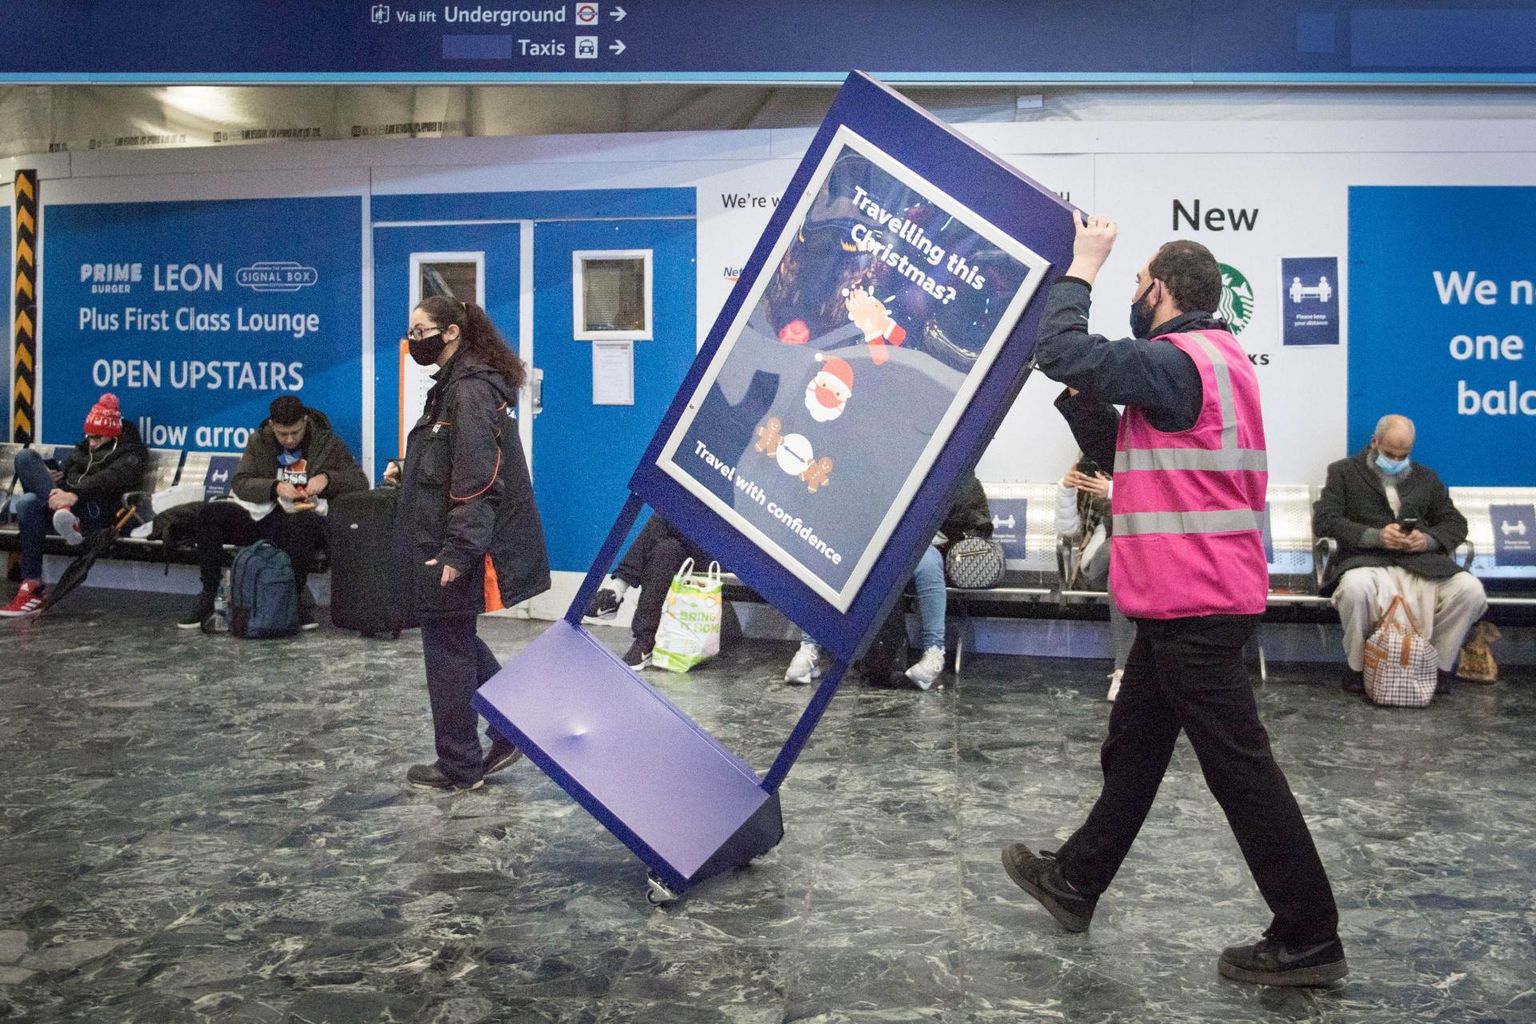 Jõulude ajal reisimise kohta teavet andnud plakati eemaldamine Londonis Eustoni rongijaamas.  FOTO: Stefan Rousseau / pa / scanpix